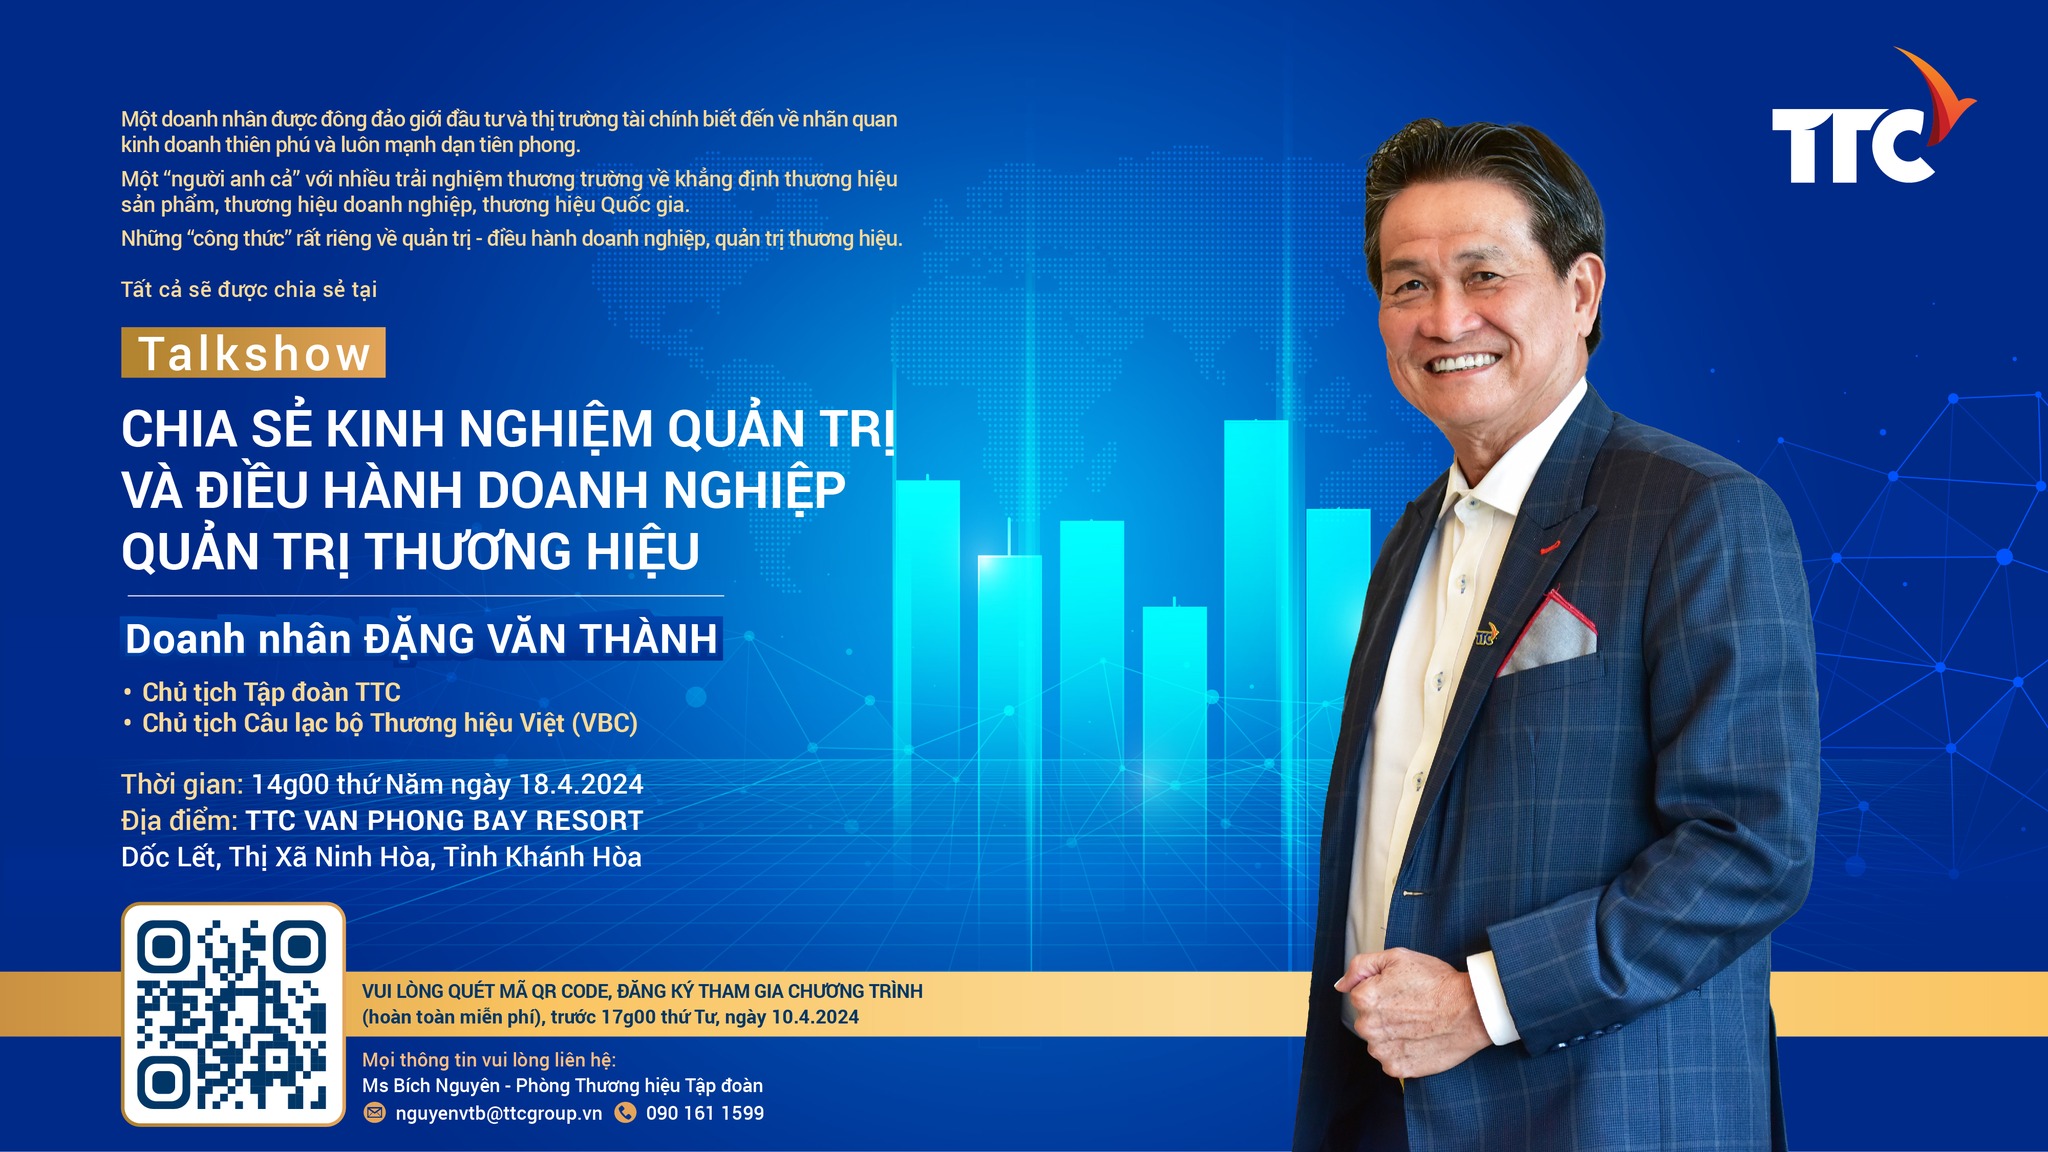 Talkshow "Chia sẻ Kinh nghiệm Quản trị và Điều hành Doanh nghiệp - Quản trị Thương hiệu" của Ông Chủ tịch Tập đoàn - ngày 18.4.2024, tại TTC Van Phong Bay Resort